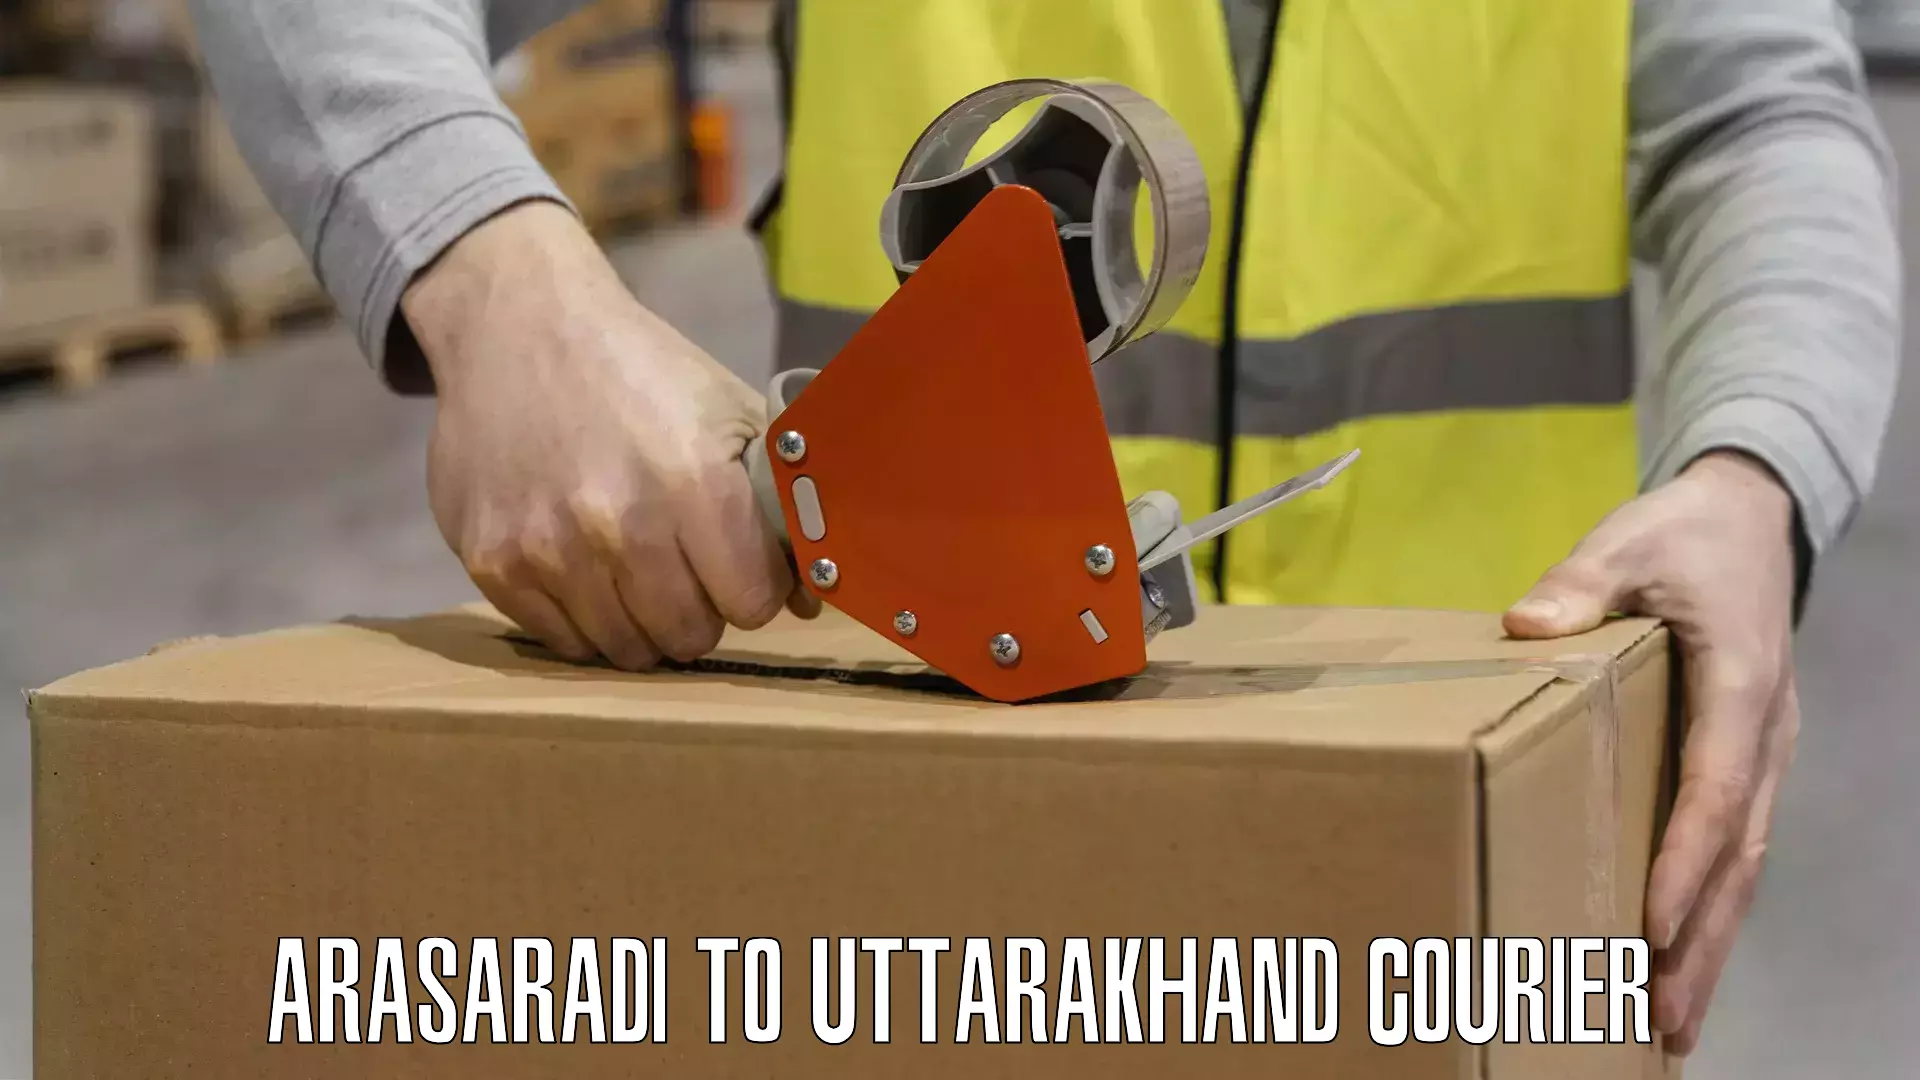 Advanced shipping logistics Arasaradi to Someshwar